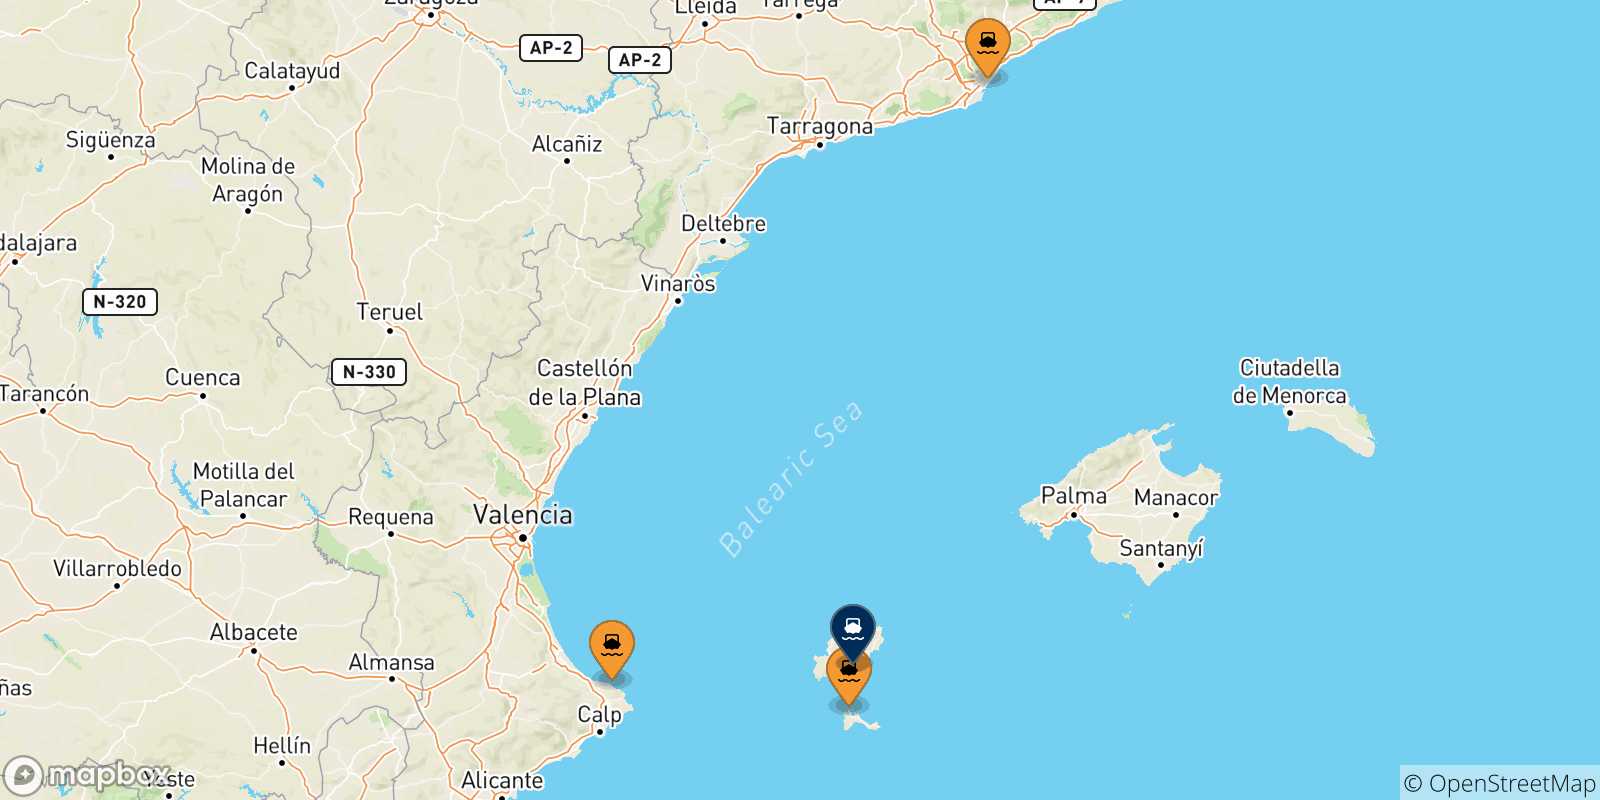 Mappa delle possibili rotte tra la Spagna e Ibiza